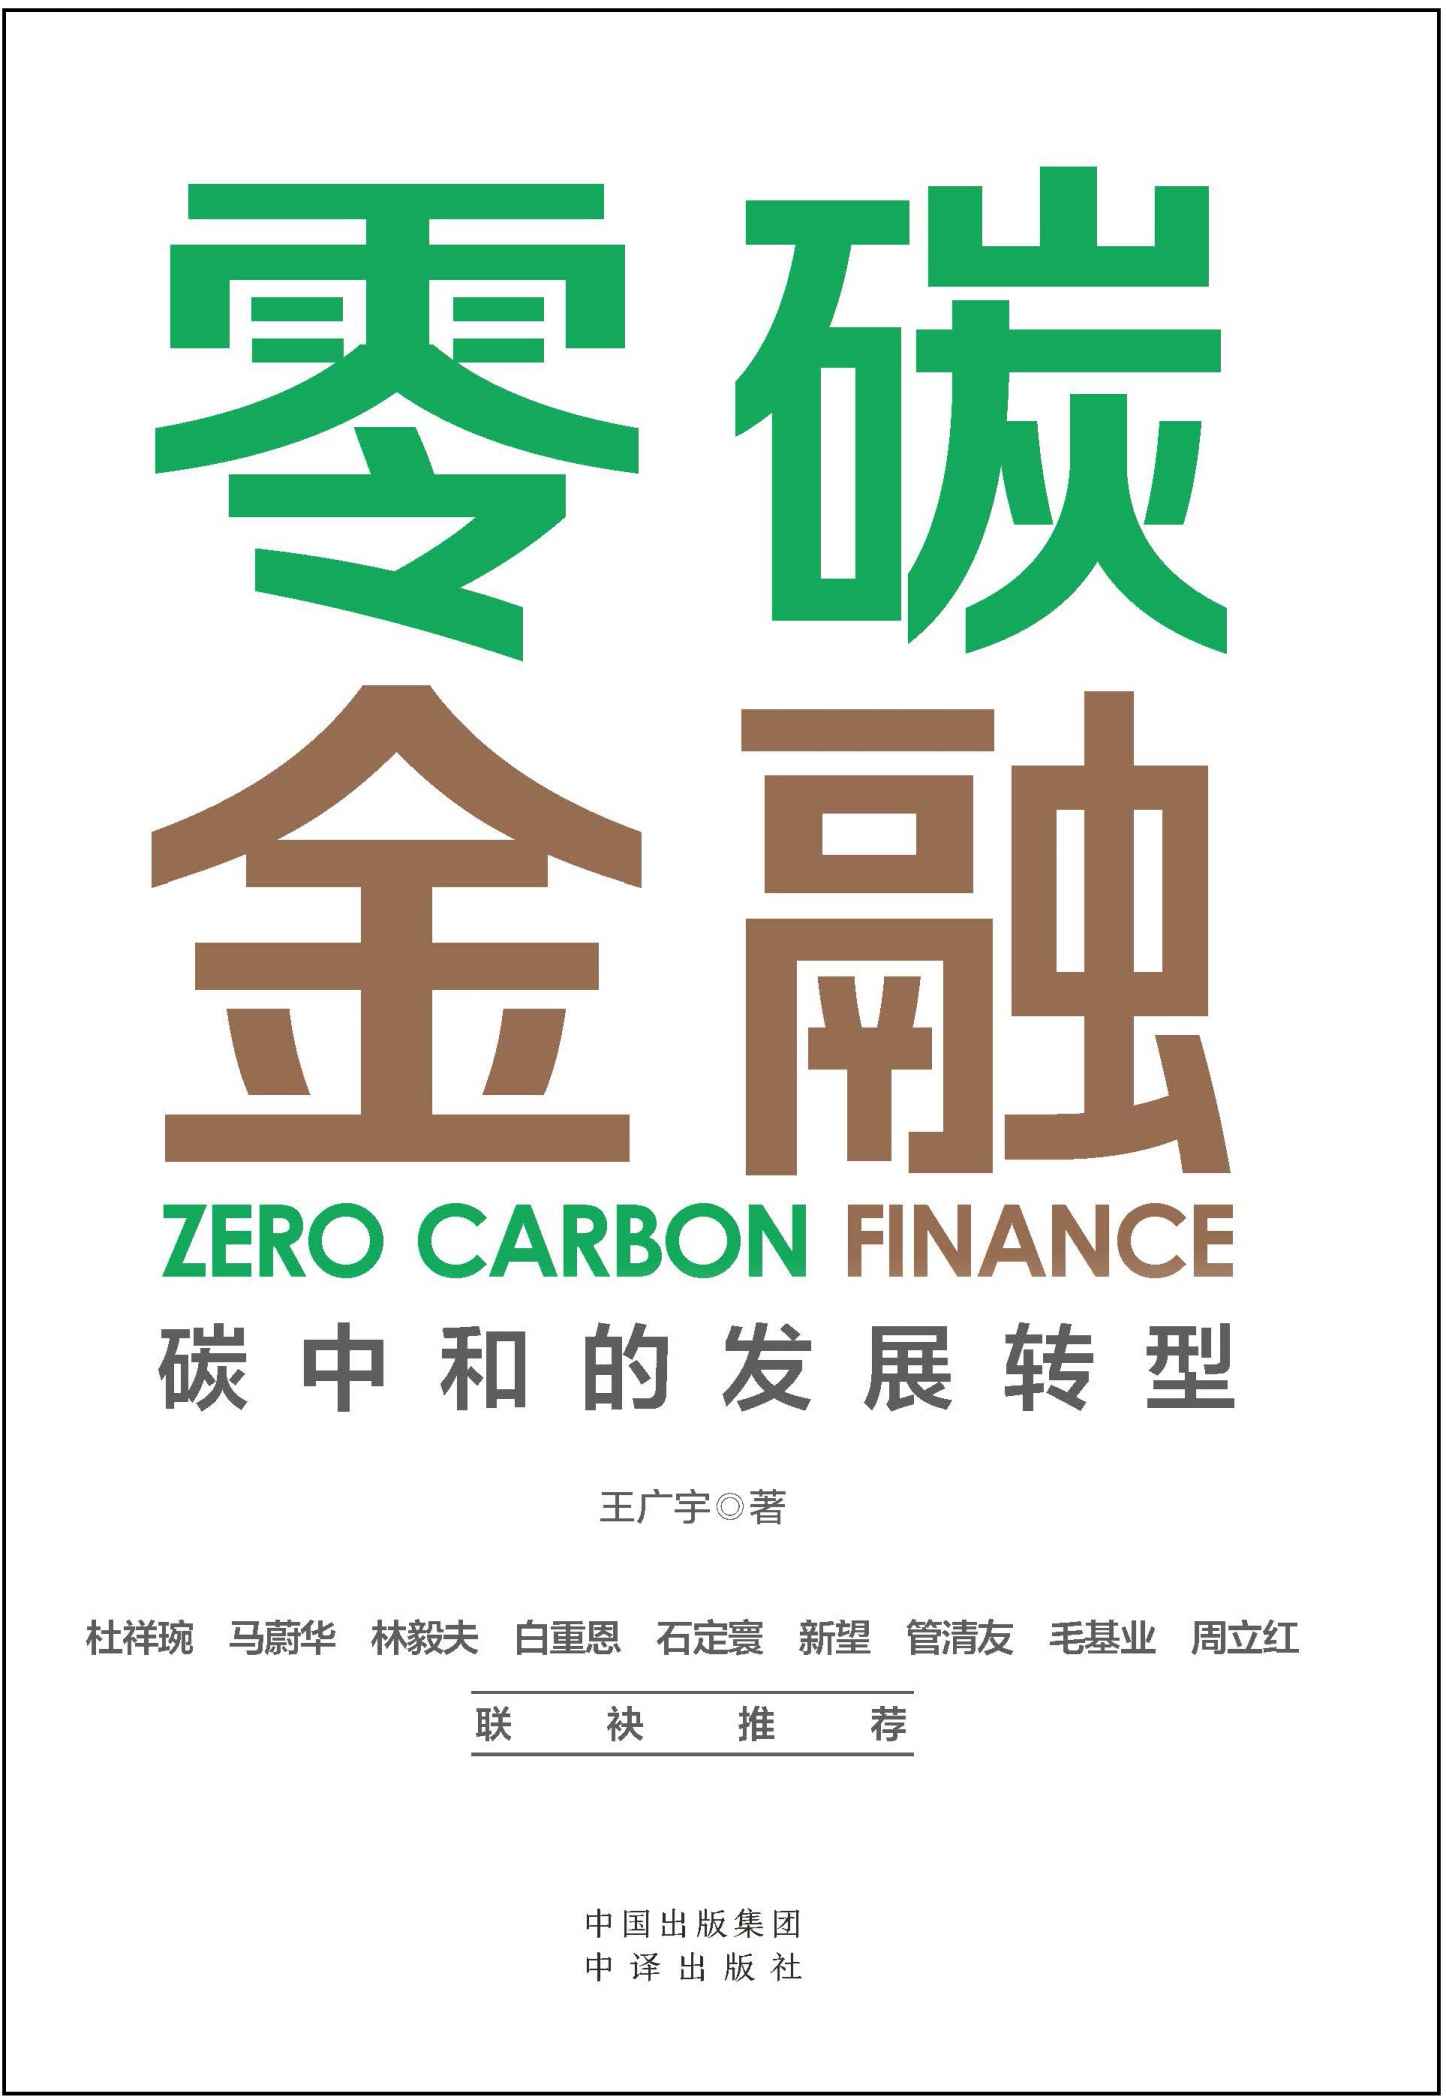 《零碳金融》-azw3,mobi,epub,pdf,txt,kindle电子书免费下载